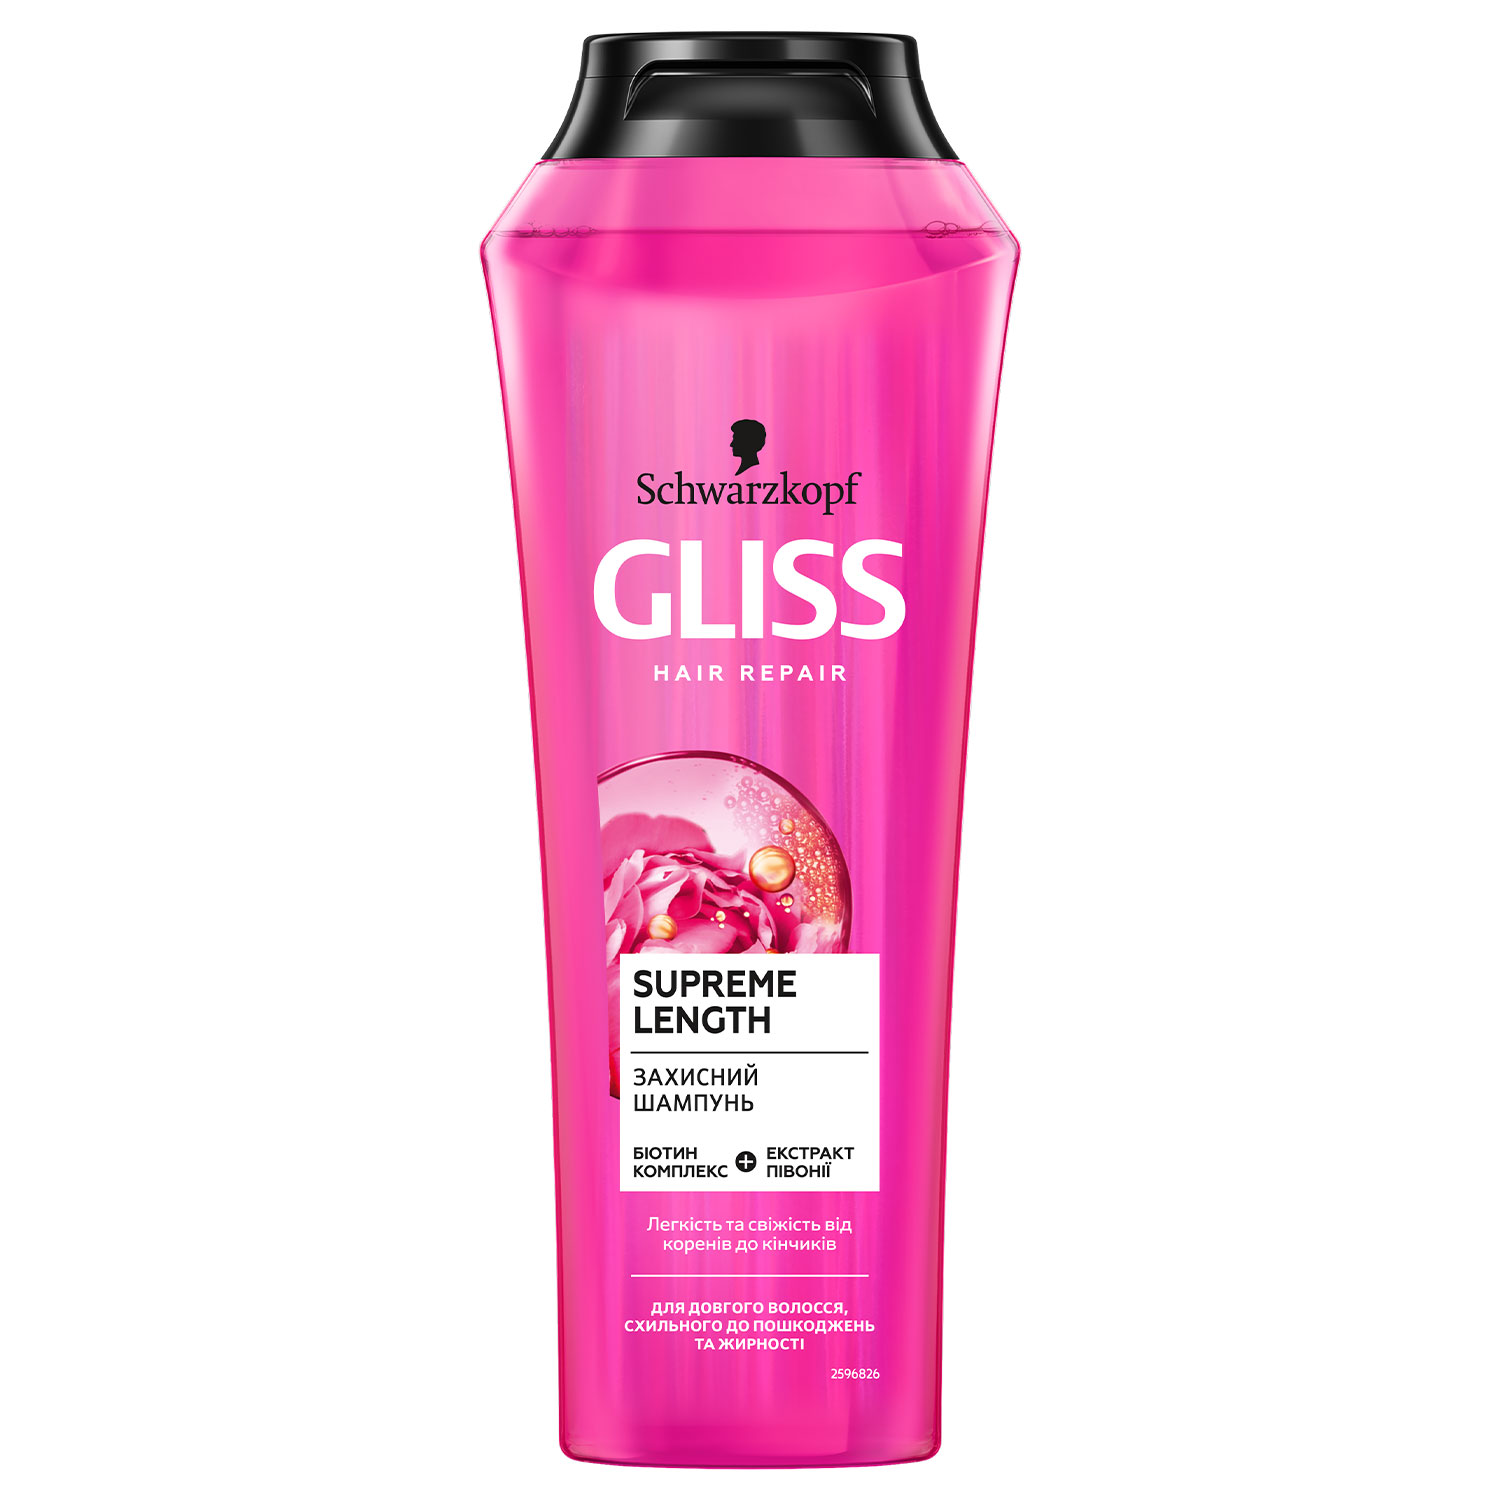 Захисний шампунь GLISS Supreme Length для довгого волосся, схильного до пошкоджень та жирності, 250 мл